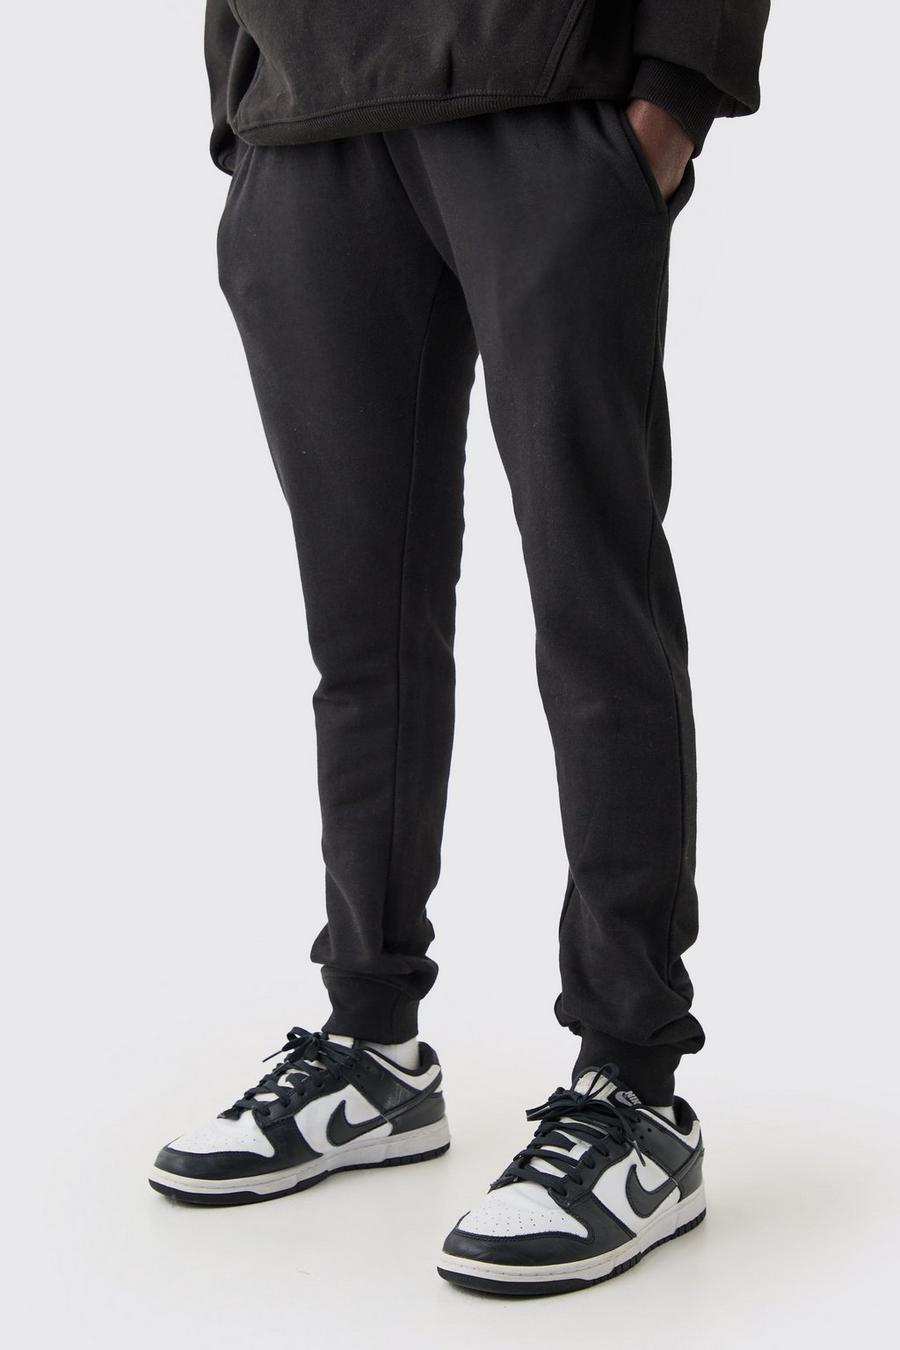 Pantalón deportivo súper pitillo, Black image number 1